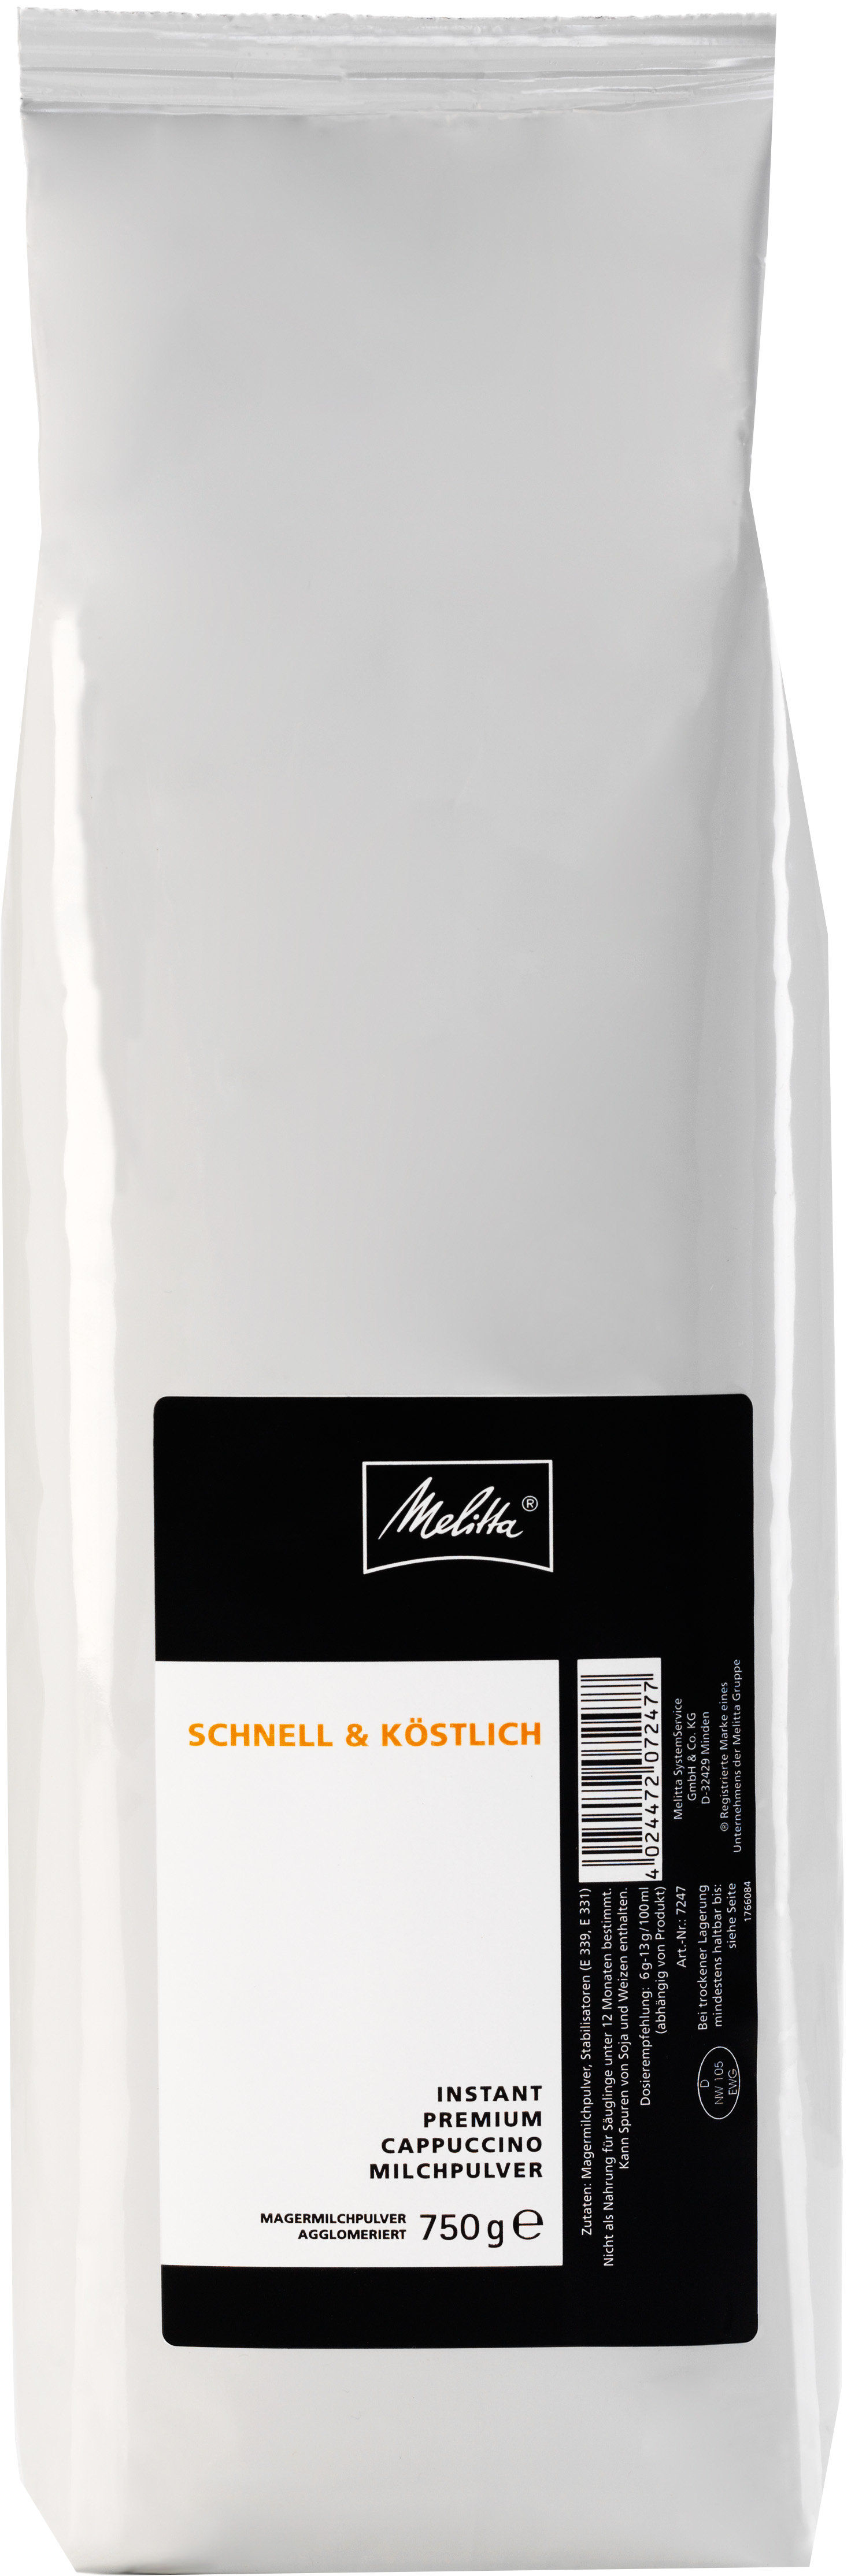 Melitta Instant Premium Cappuccino Milchpulver